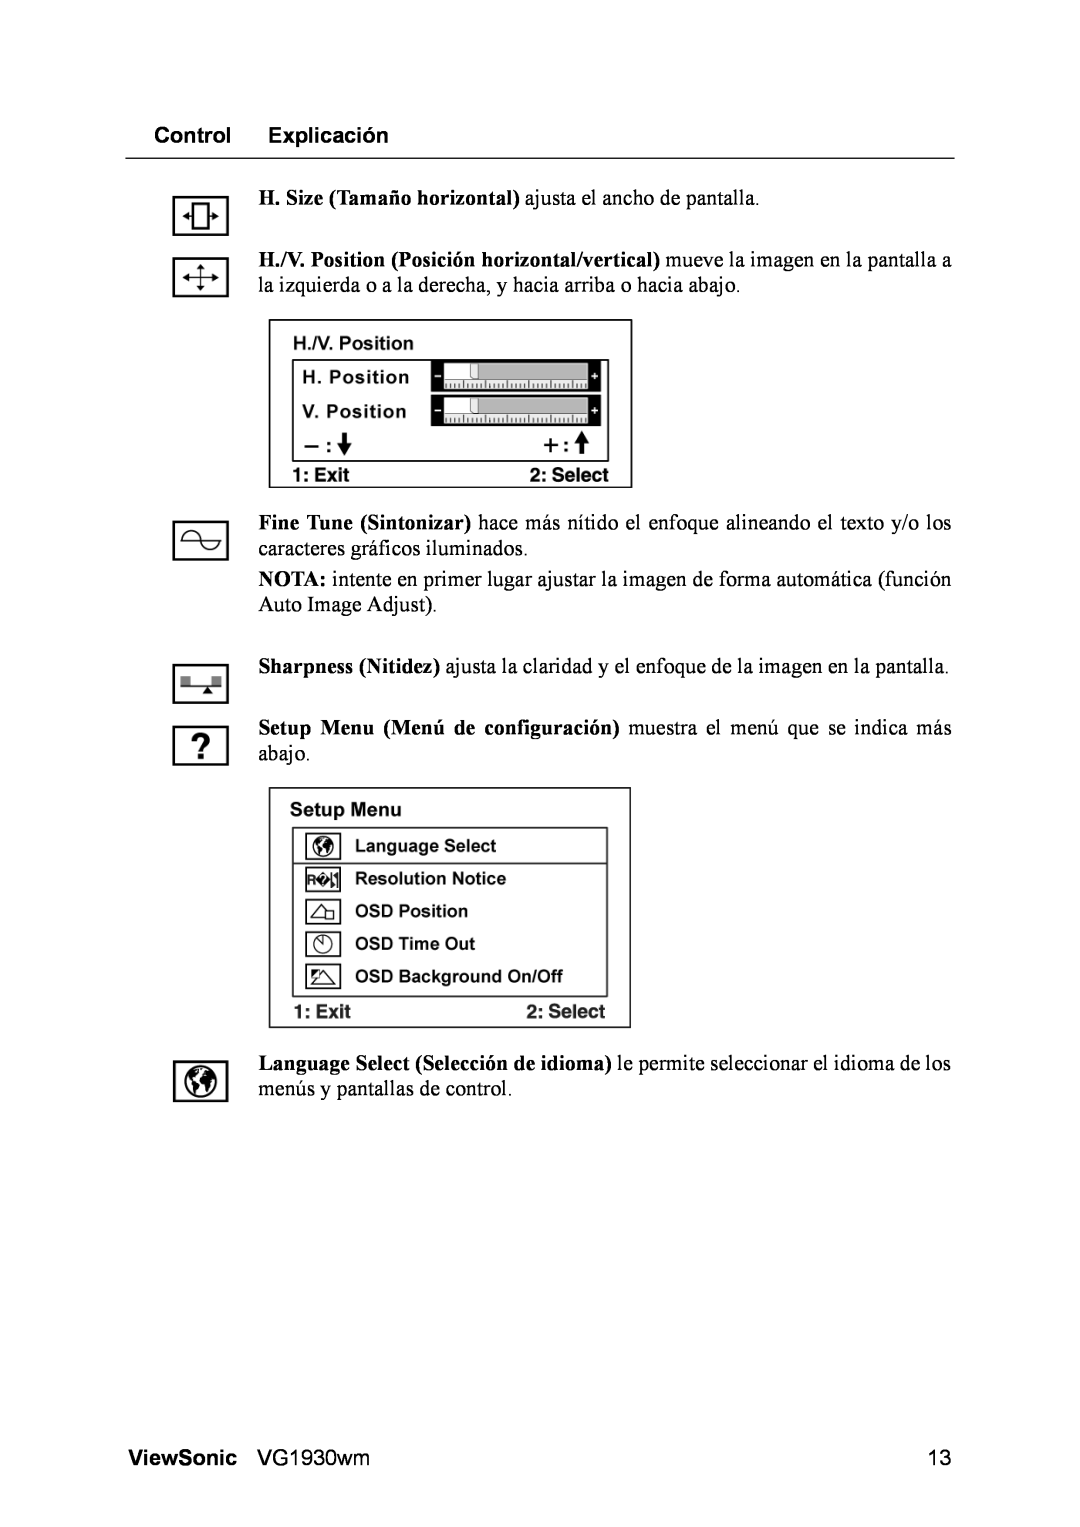 ViewSonic manual Control Explicación, H. Size Tamaño horizontal ajusta el ancho de pantalla, ViewSonic VG1930wm 